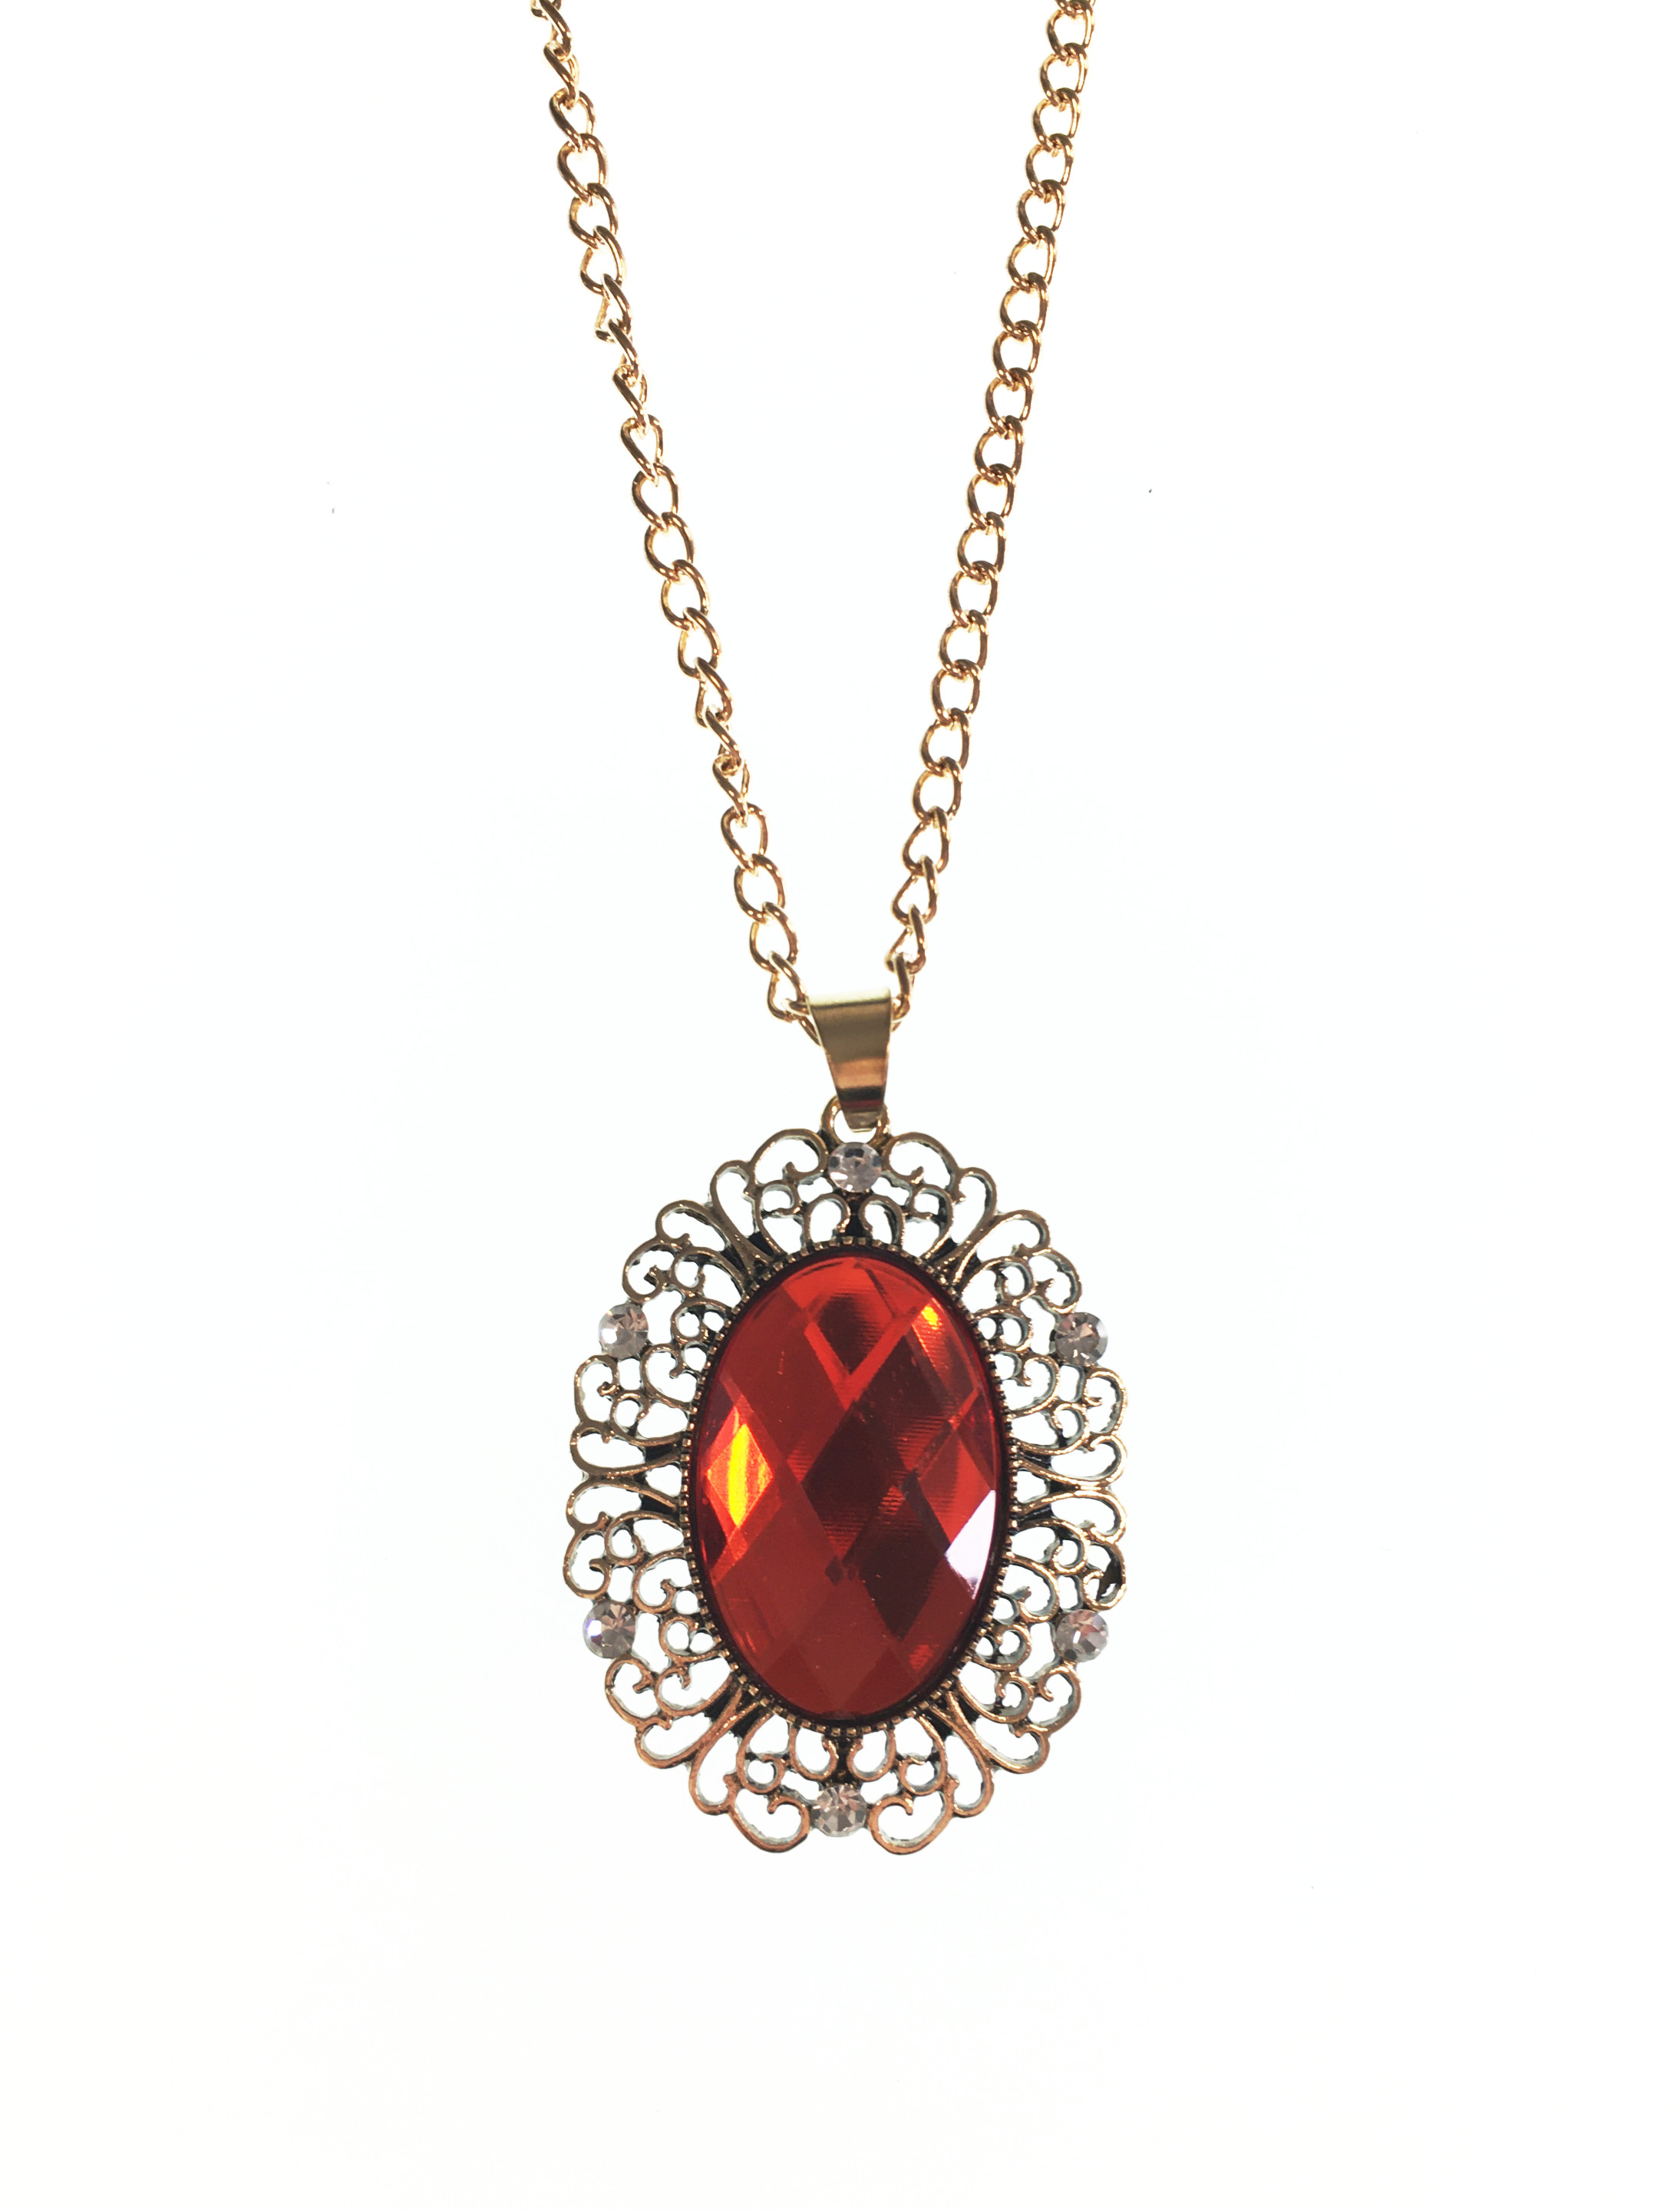 Halskette gold mit großem rotem Stein